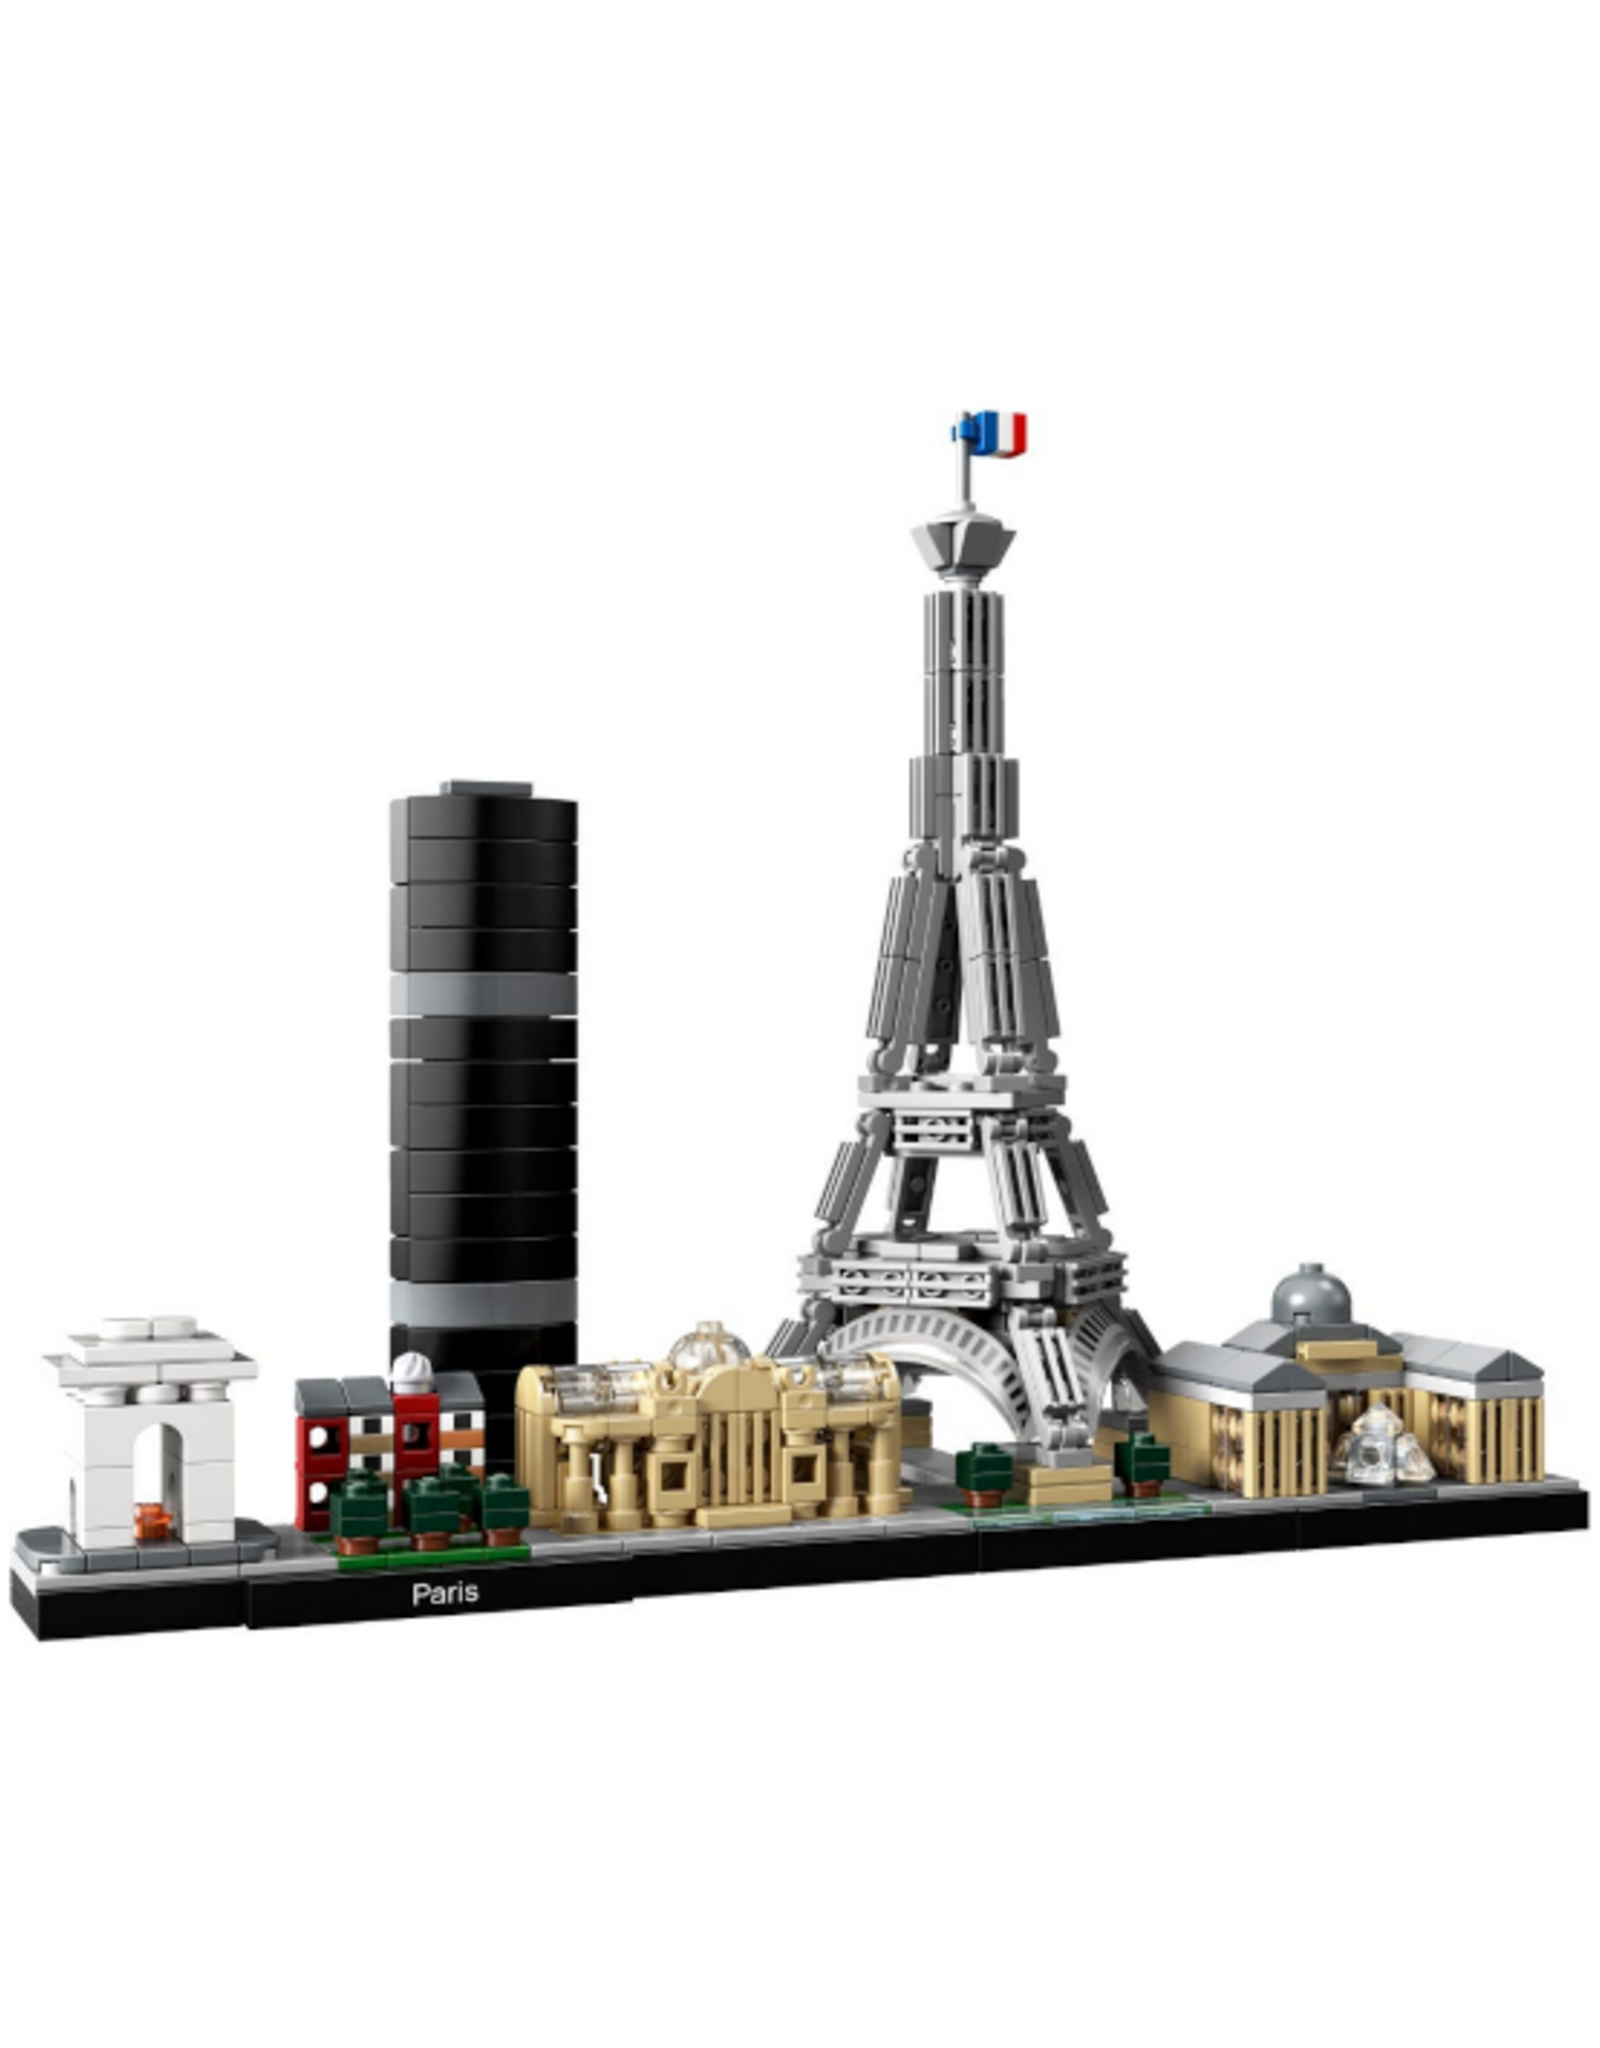 Lego Lego - Architecture - 21044 - Paris